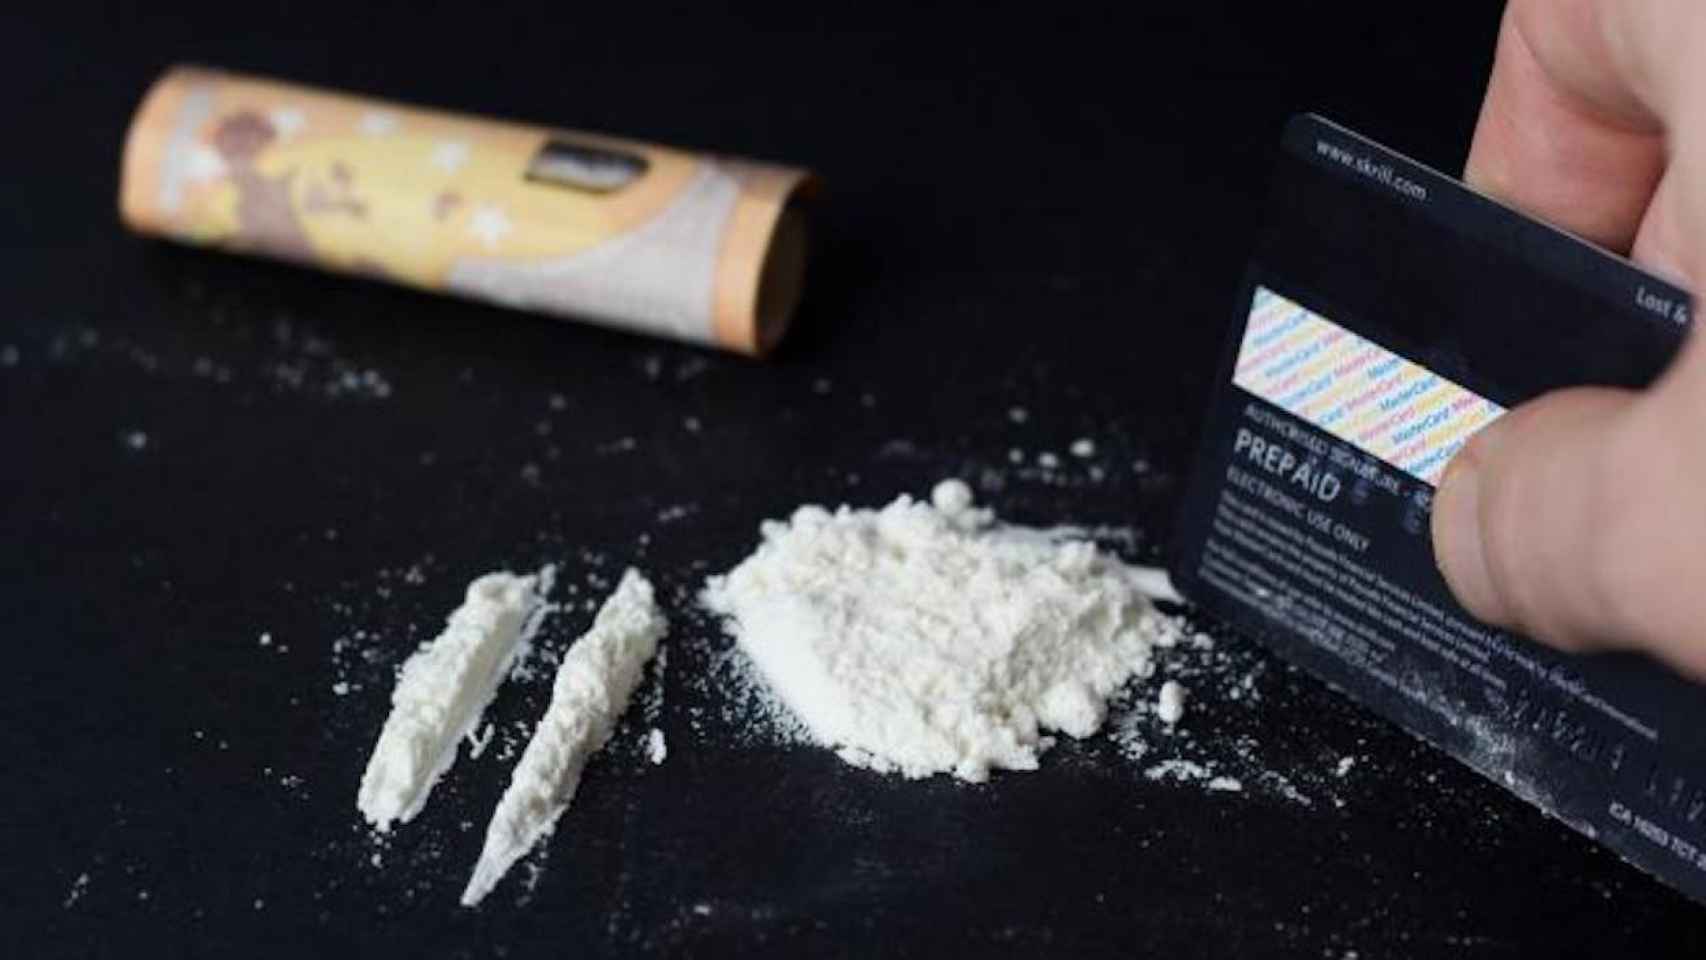 Una persona se prepara para esnifar cocaína / FLICKR